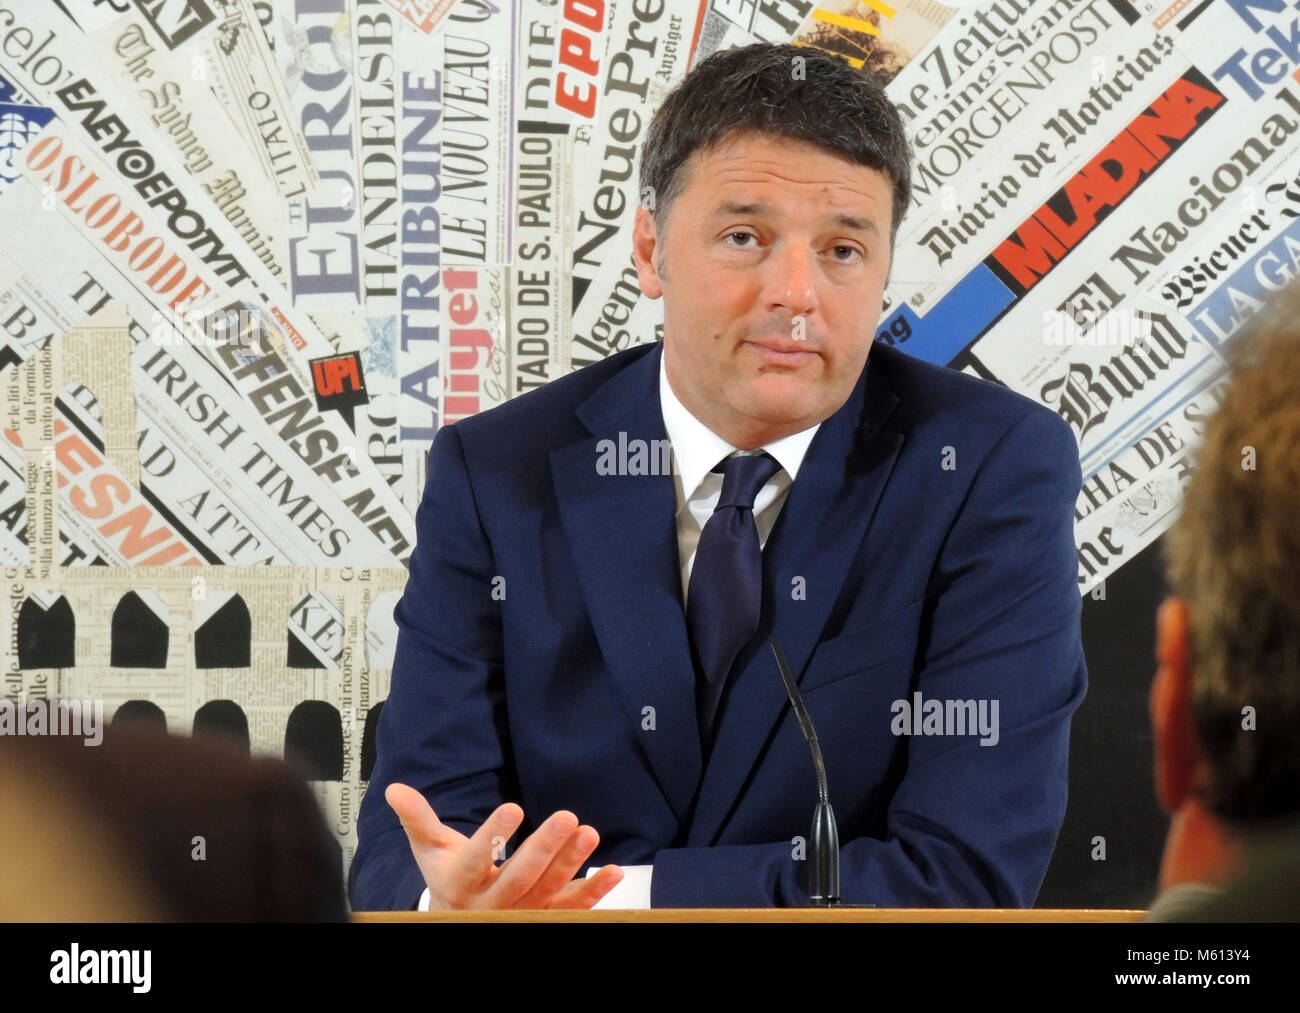 13 de febrero de 2018, Italia, Roma: El líder del Partido Democrático Social Italiano, Matteo Renzi, habla a los corresponsales extranjeros durante una conferencia de prensa. Foto: Lena Klimkeit/dpa Foto de stock